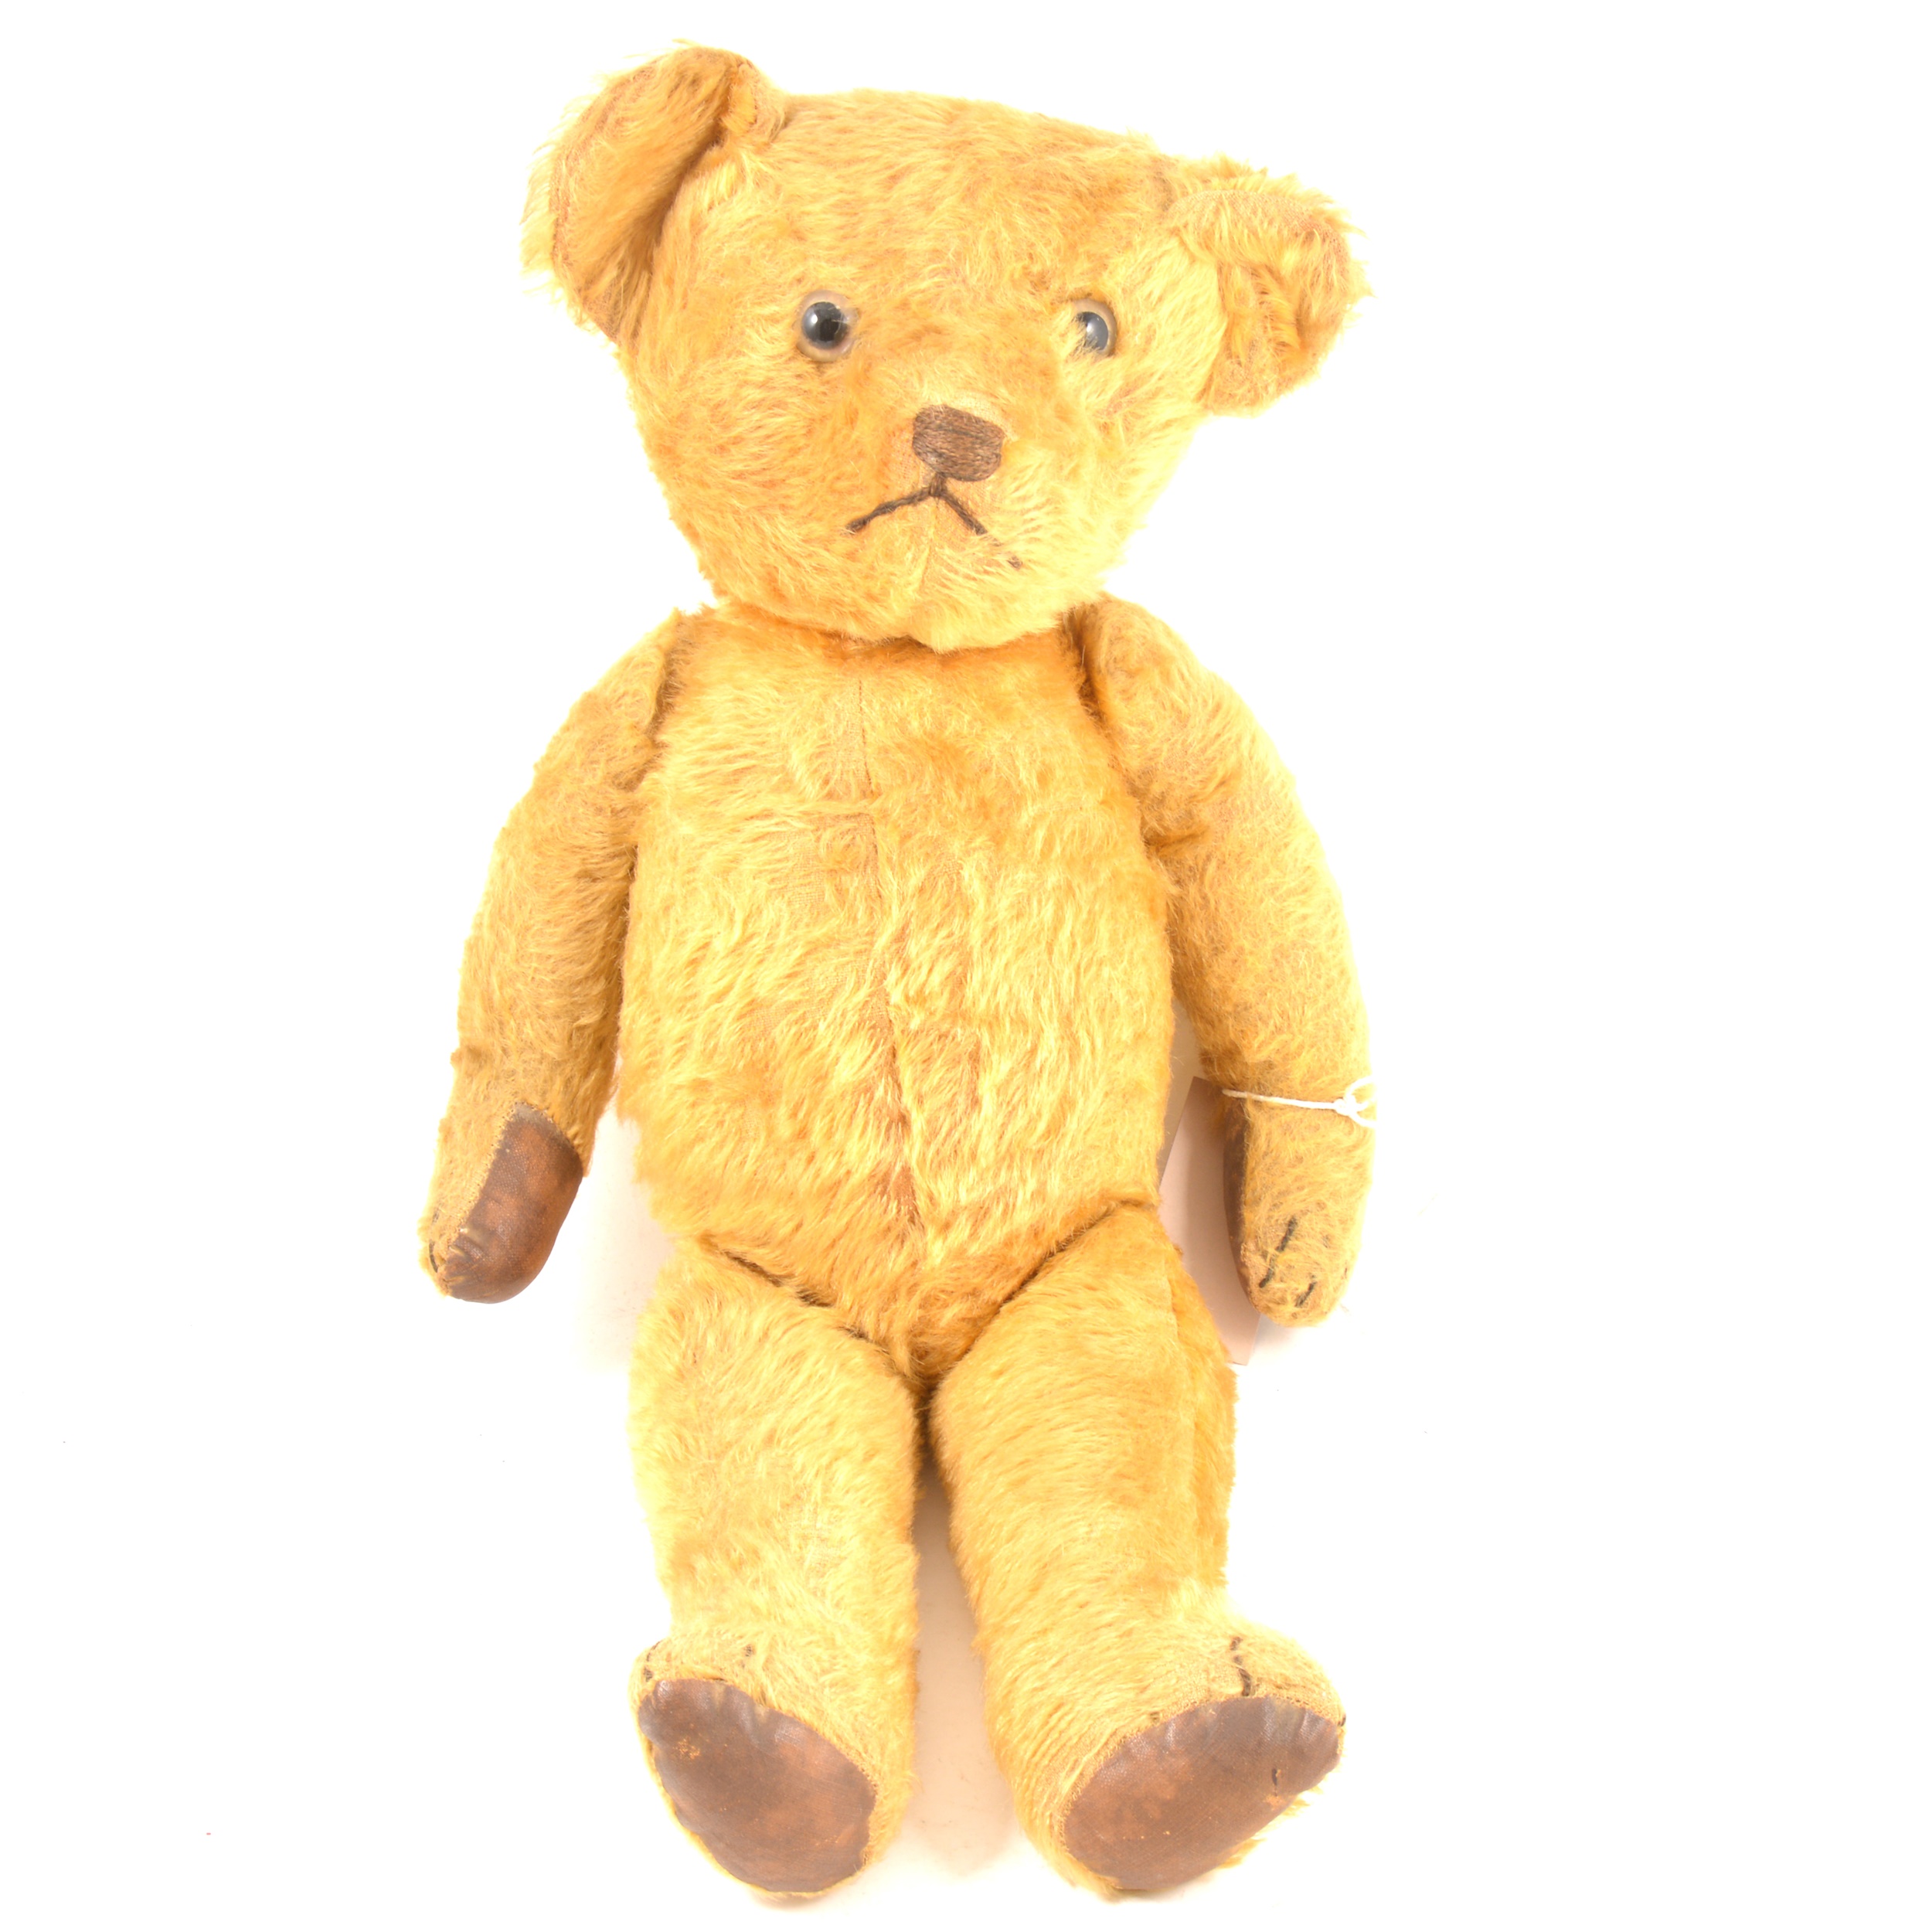 An American made teddy bear, c1940s,